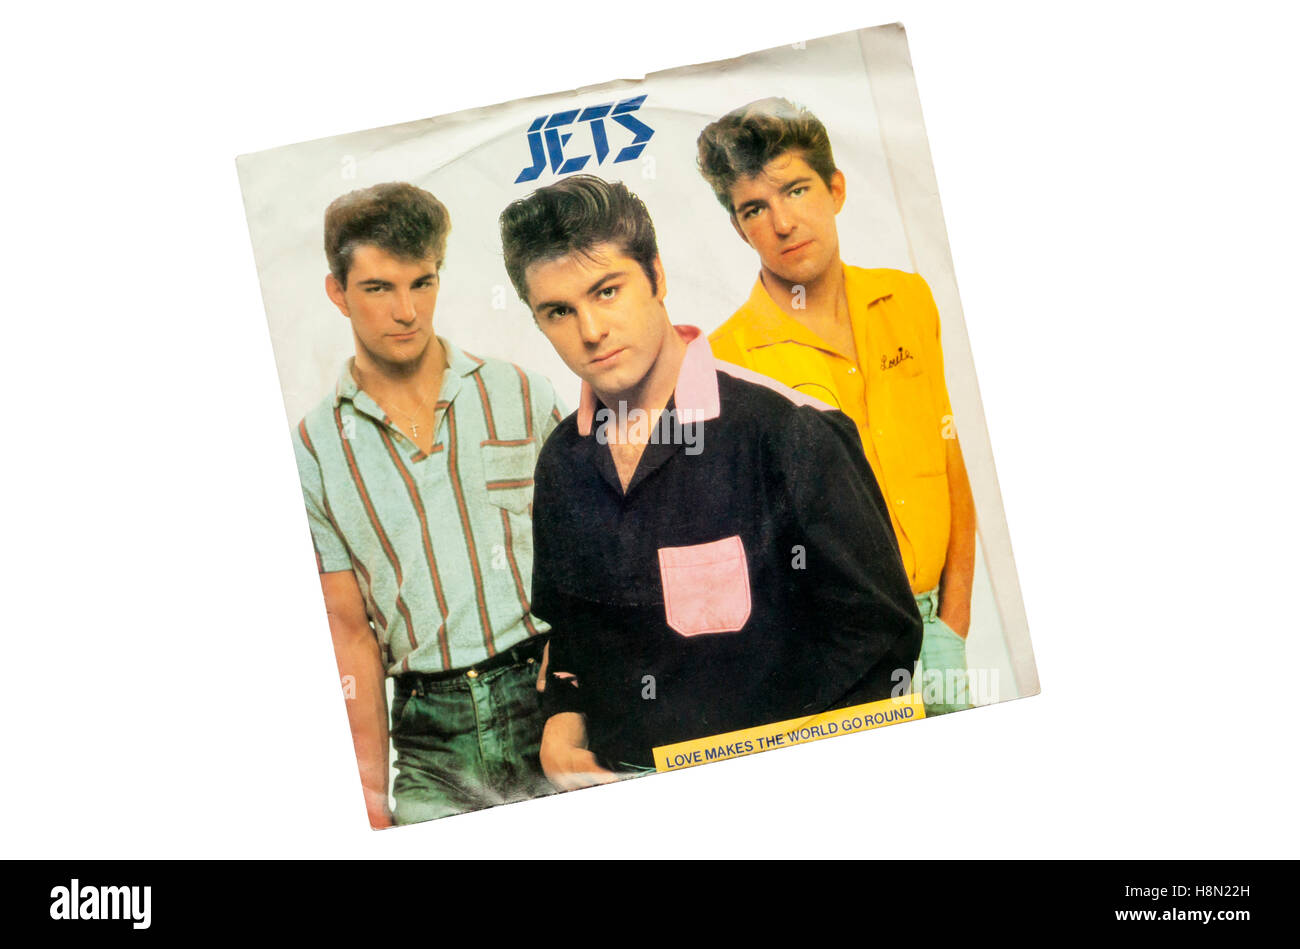 Liebe macht die World Go Round 1982 vom britischen Rockabilly erschien band The Jets. Stockfoto